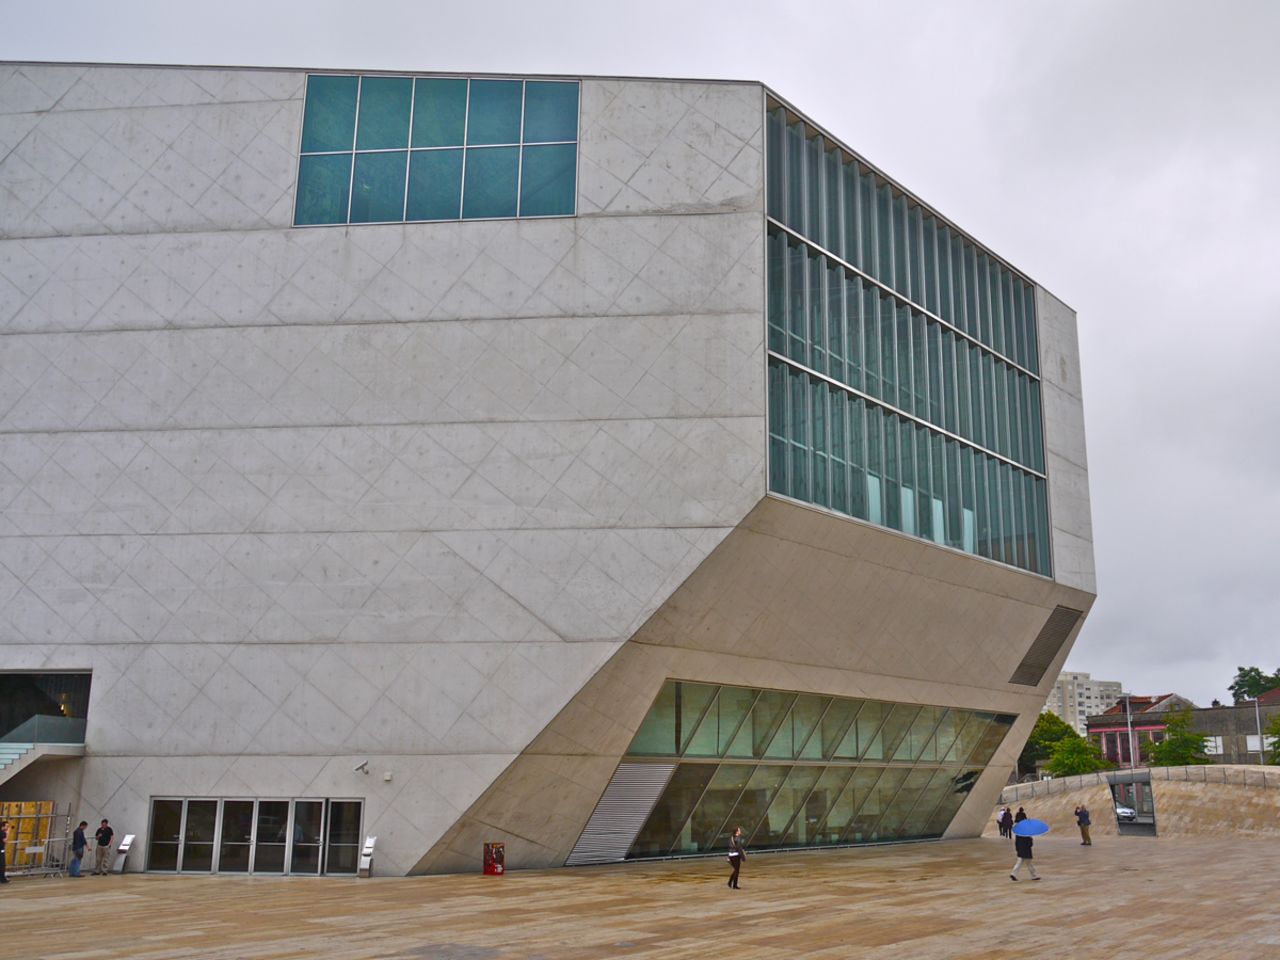 El primer concierto en la Casa da Música tuvo lugar un día antes de la inauguración oficial por el presidente portugués, el 15 de abril de 2005. El edificio es el hogar de la Orquesta Nacional de Oporto. Arquitecto: Office for Metropolitan Architecture.